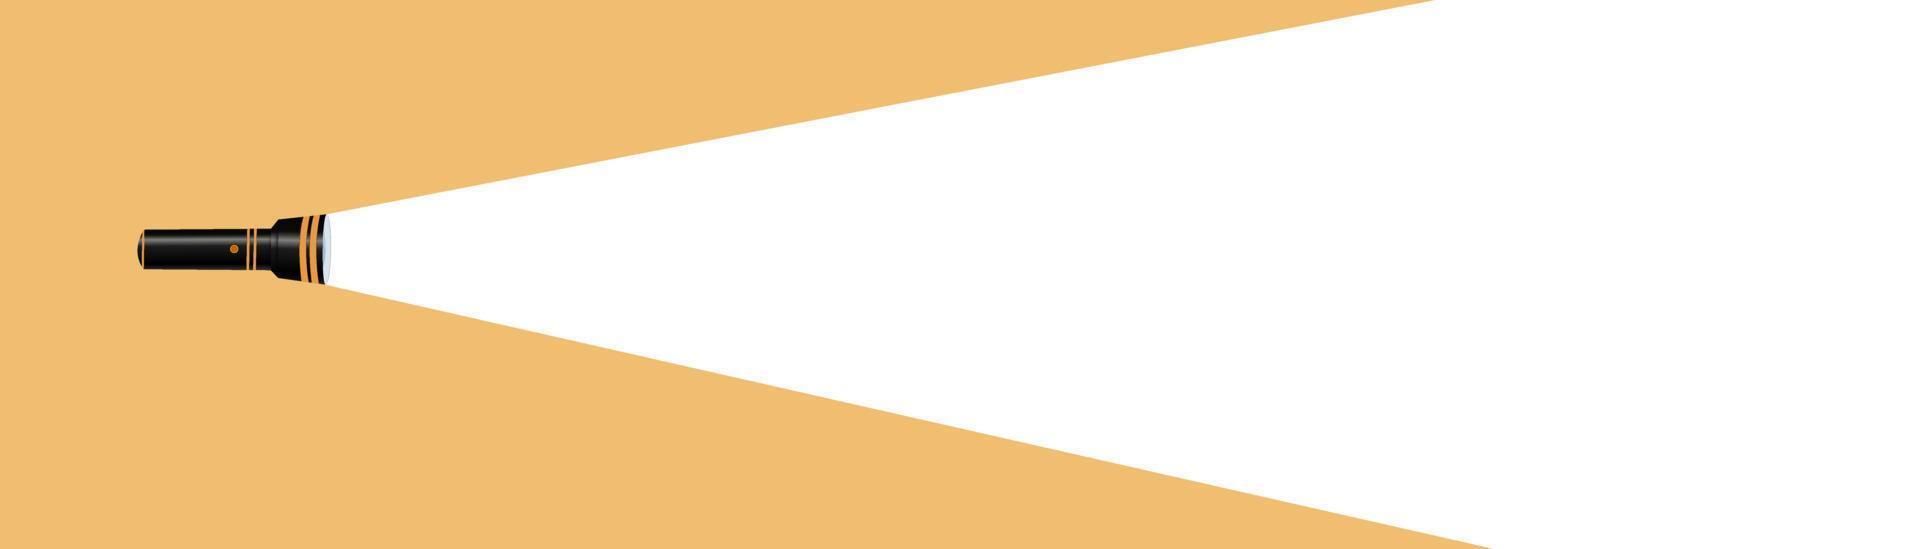 silhueta de lanterna em um fundo amarelo. encontrar ou encontrar um conceito de design. aplicável como banner, anúncio, design de mensagem. ilustração vetorial plana. lanterna, lâmpada, holofote, propaganda. vetor